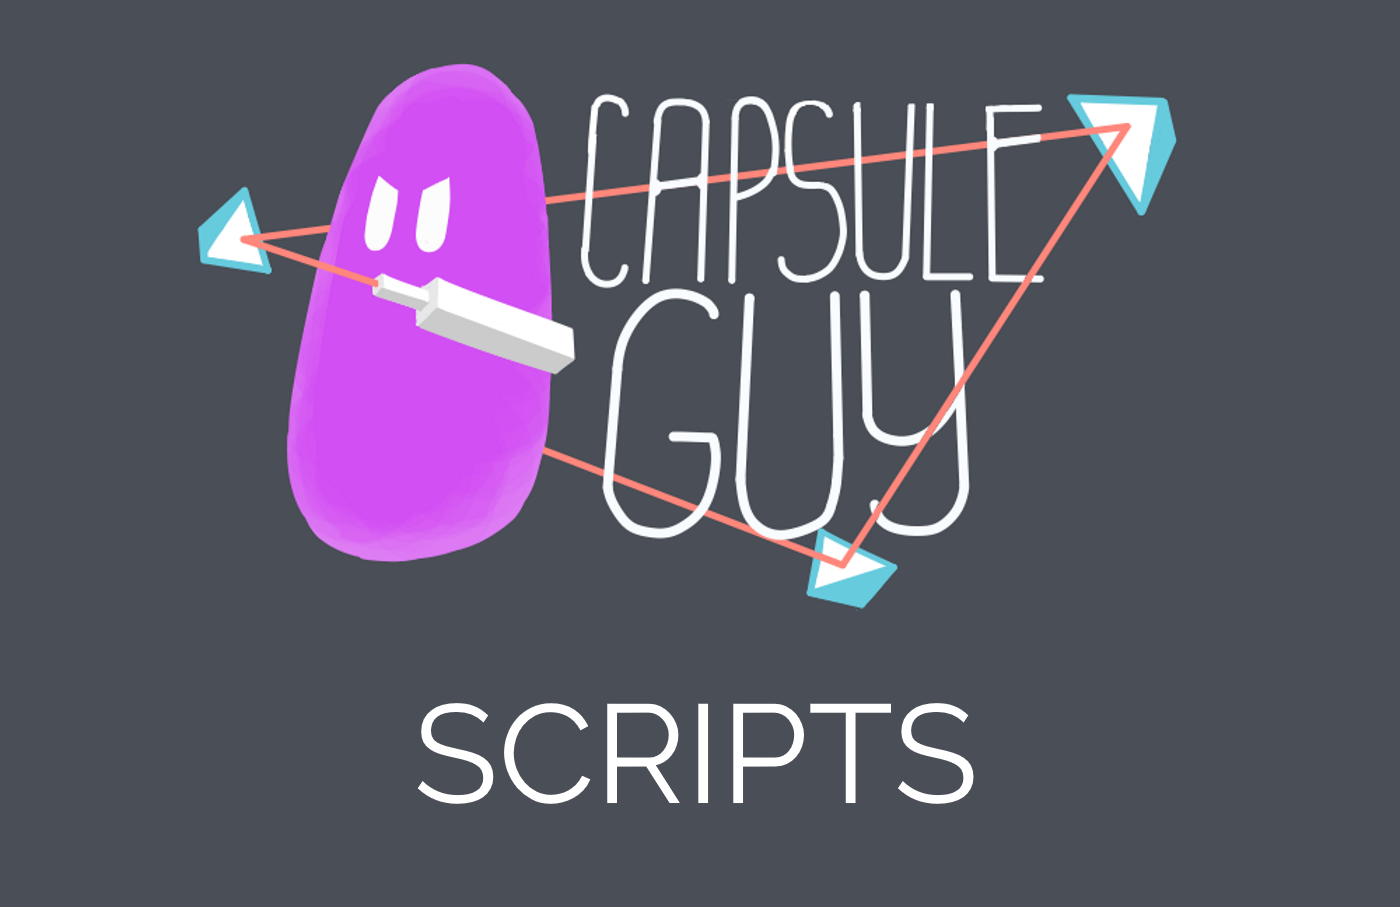 Capsule Guy Scripts